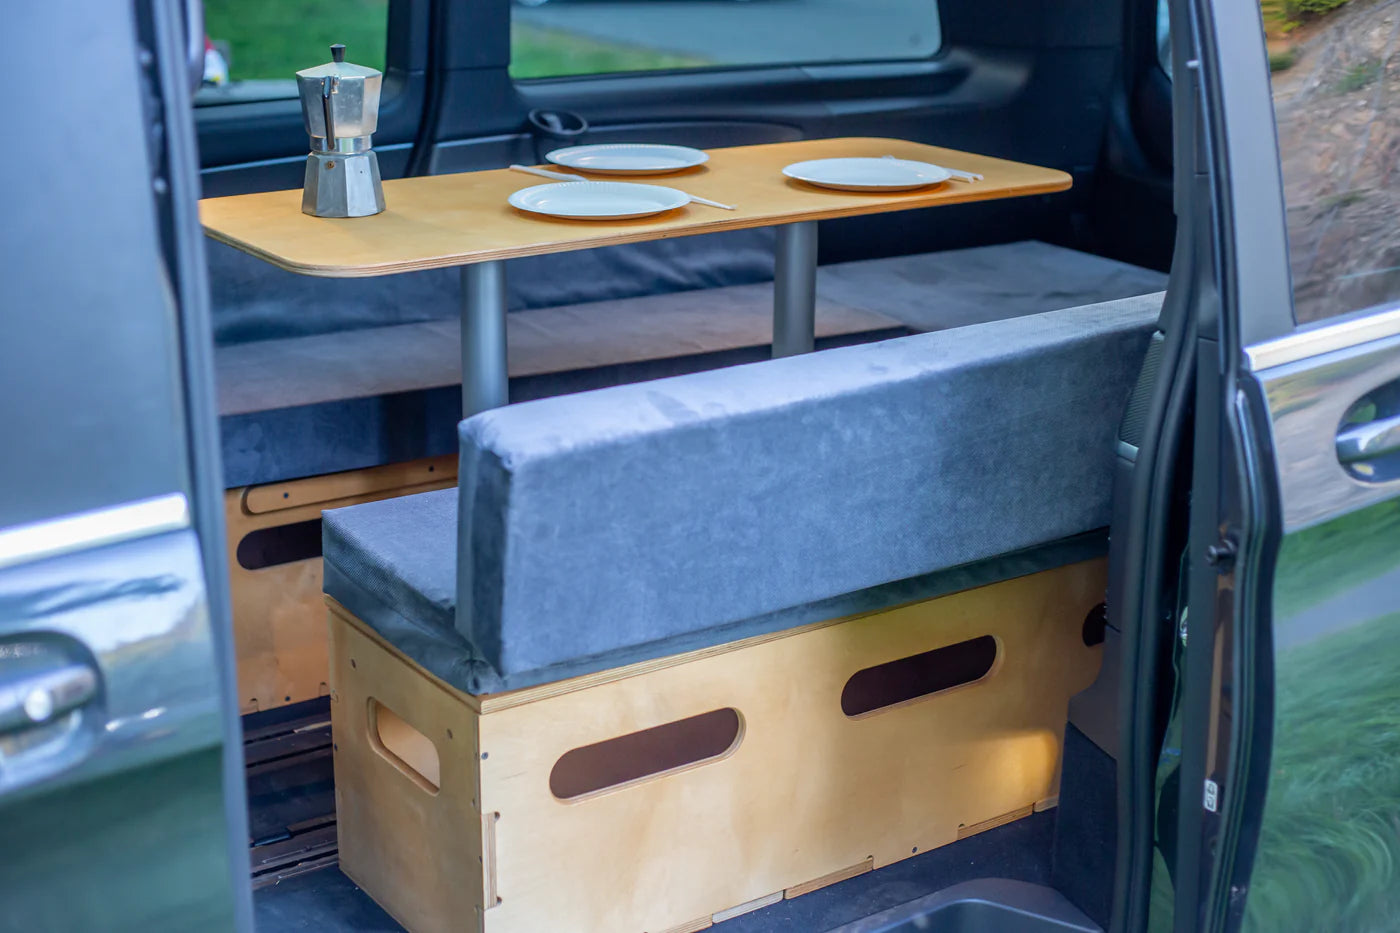 MoonBox 115 Minibus/Transporter – Campervan-Modul für größere Autos